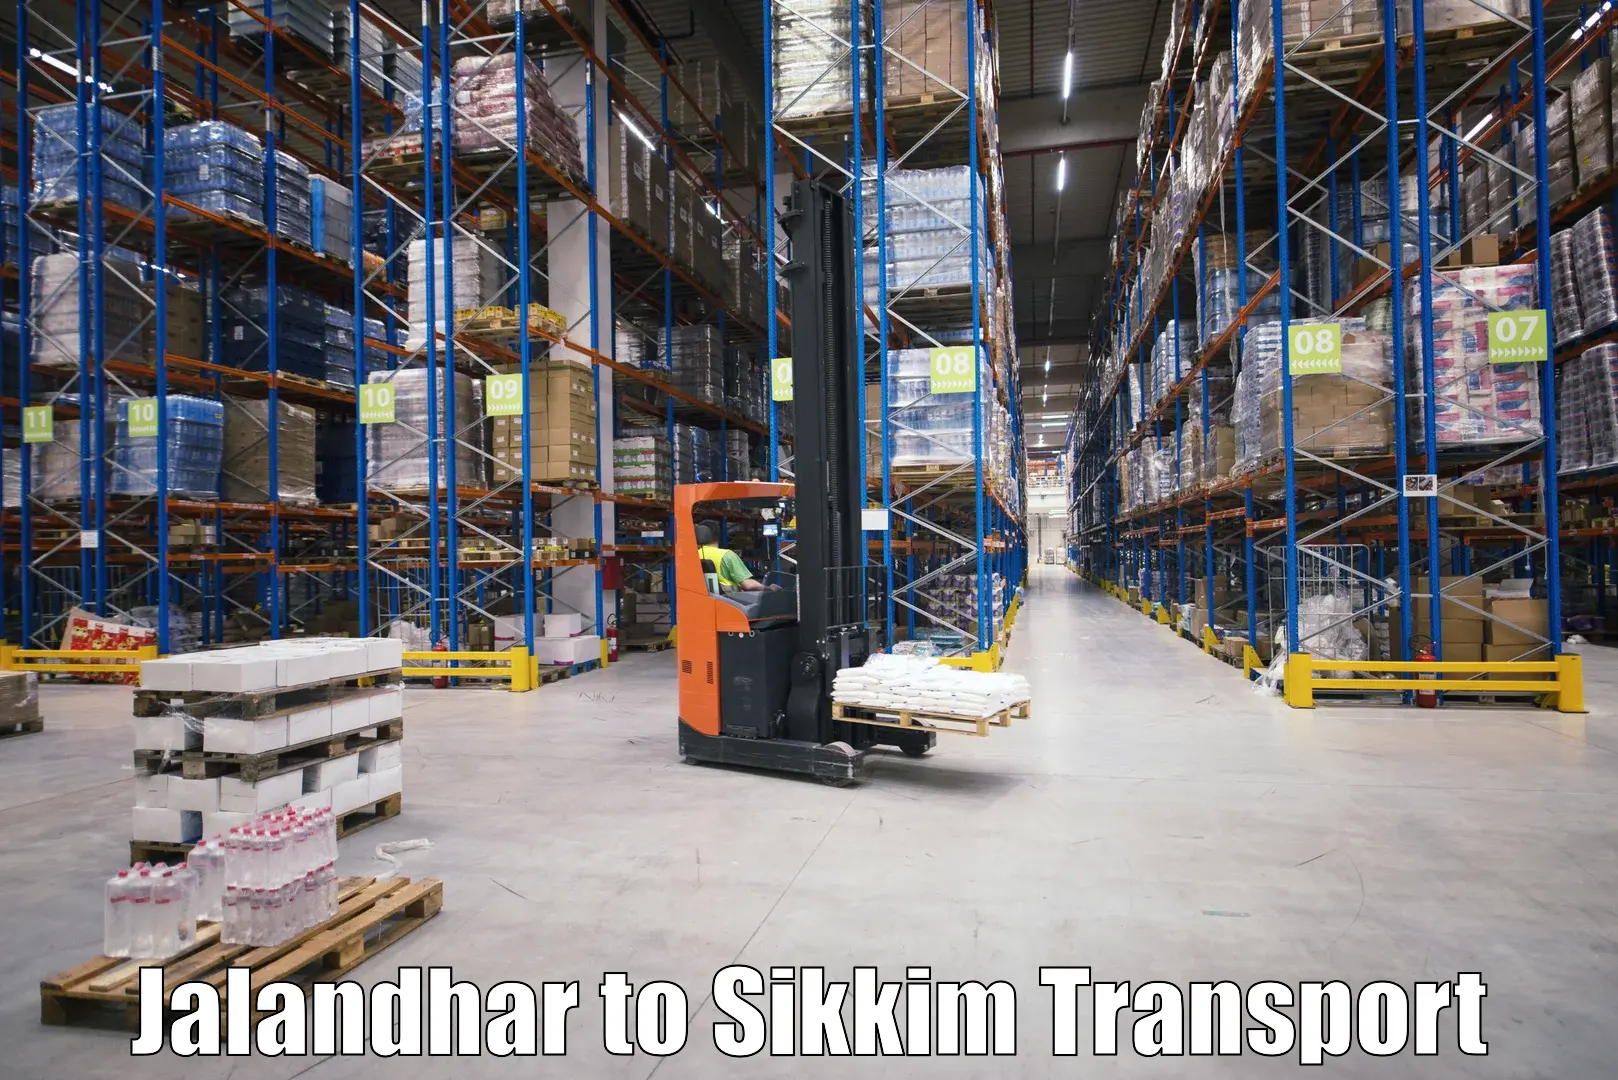 Furniture transport service Jalandhar to Mangan